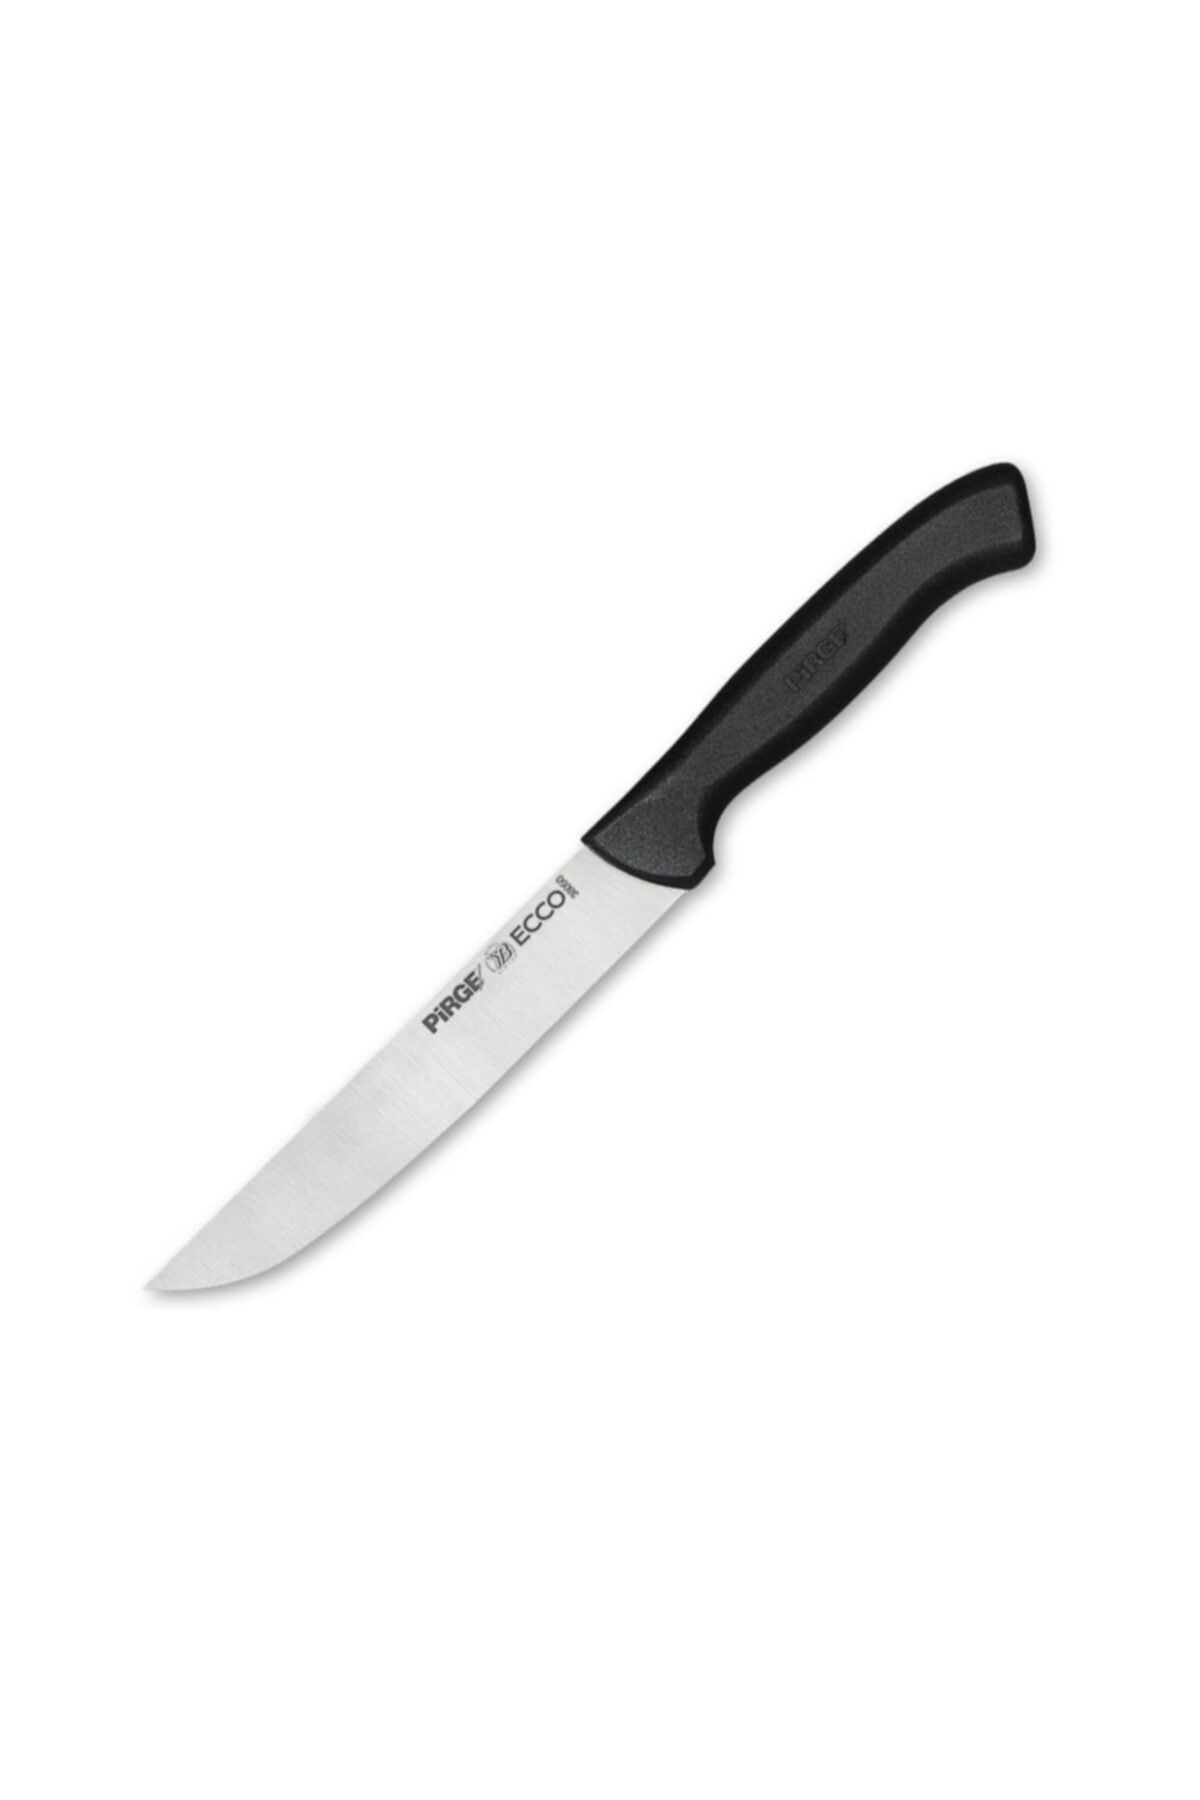 Pirge Ecco Ekmek Bıçağı 15,5cm 38050